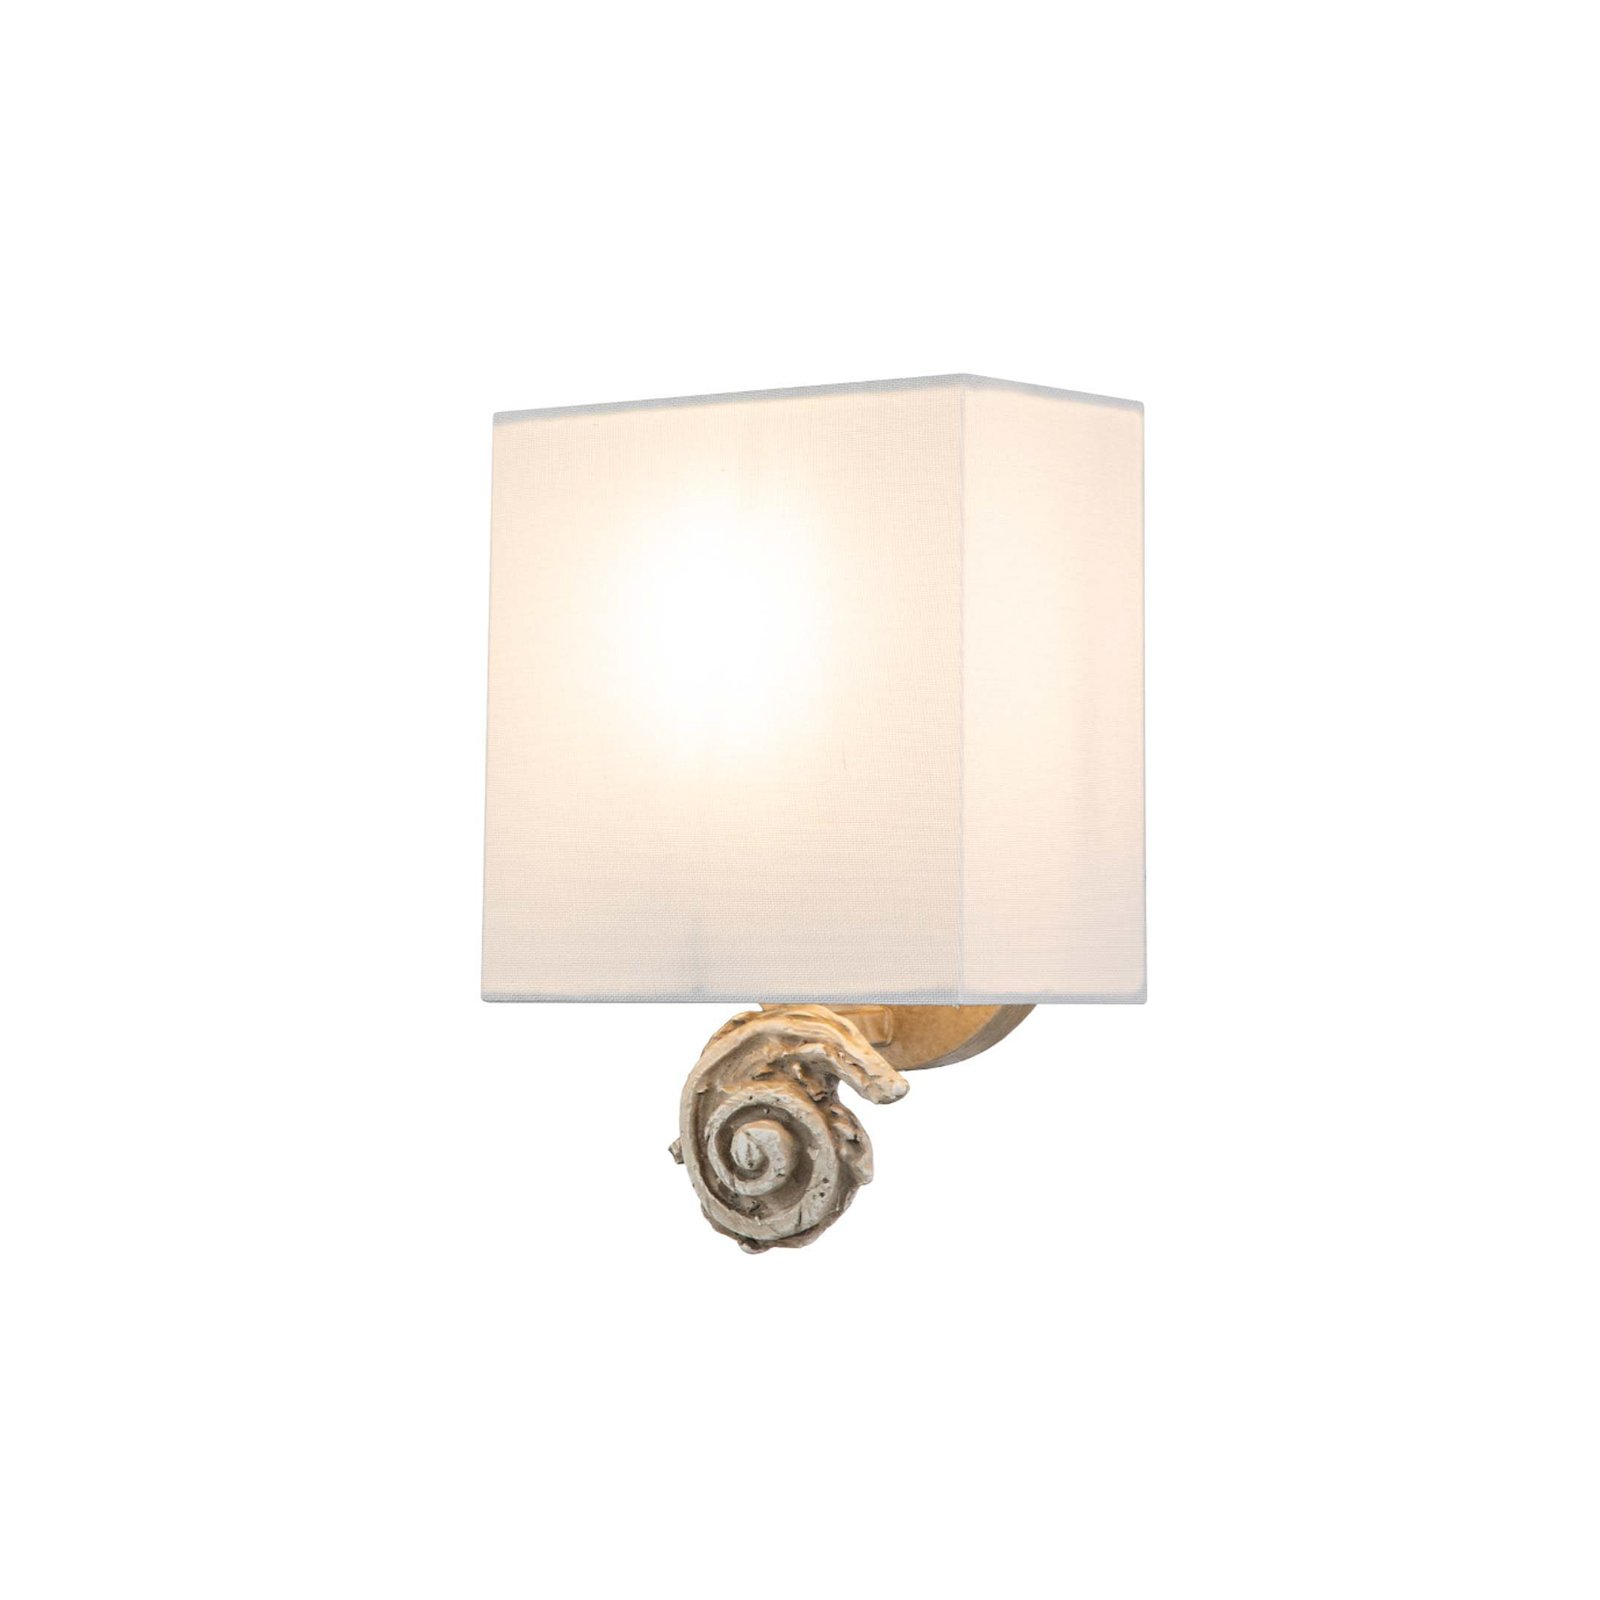 Swirl Kis fali lámpa vászon ernyővel, antik fehér színben